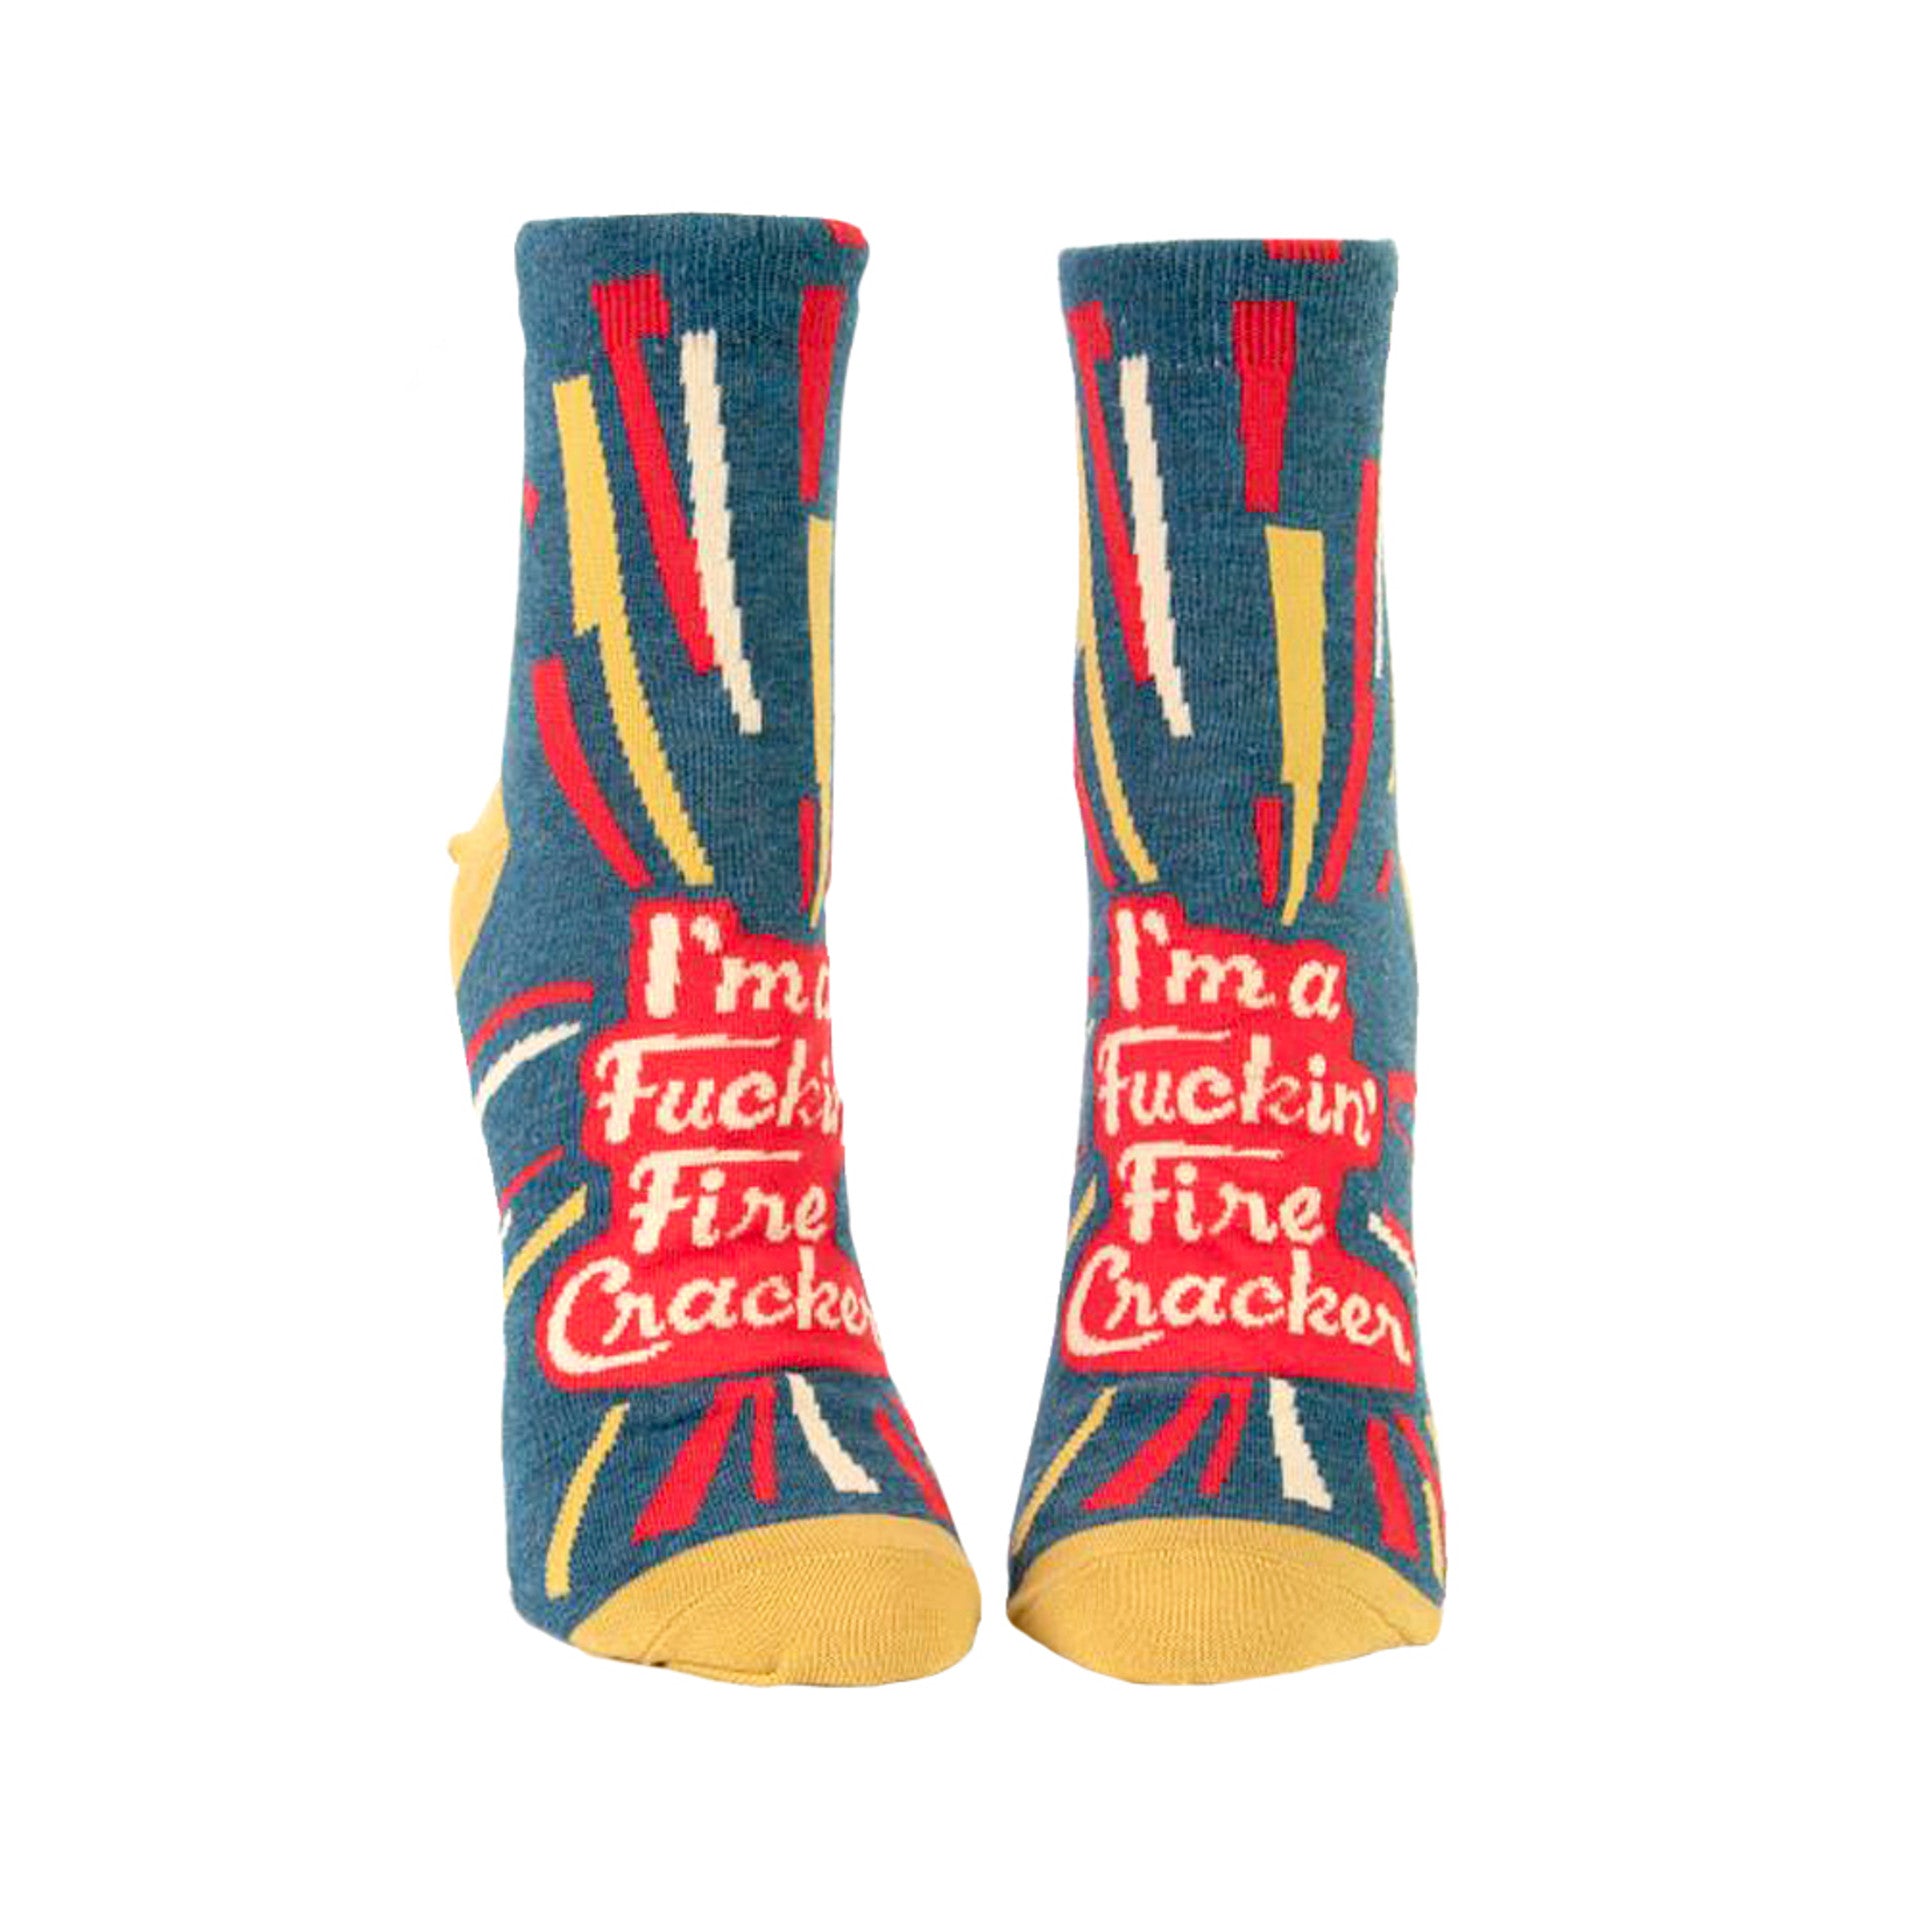 Socks Women Ankle:  I'm a Fucking Fire Cracker